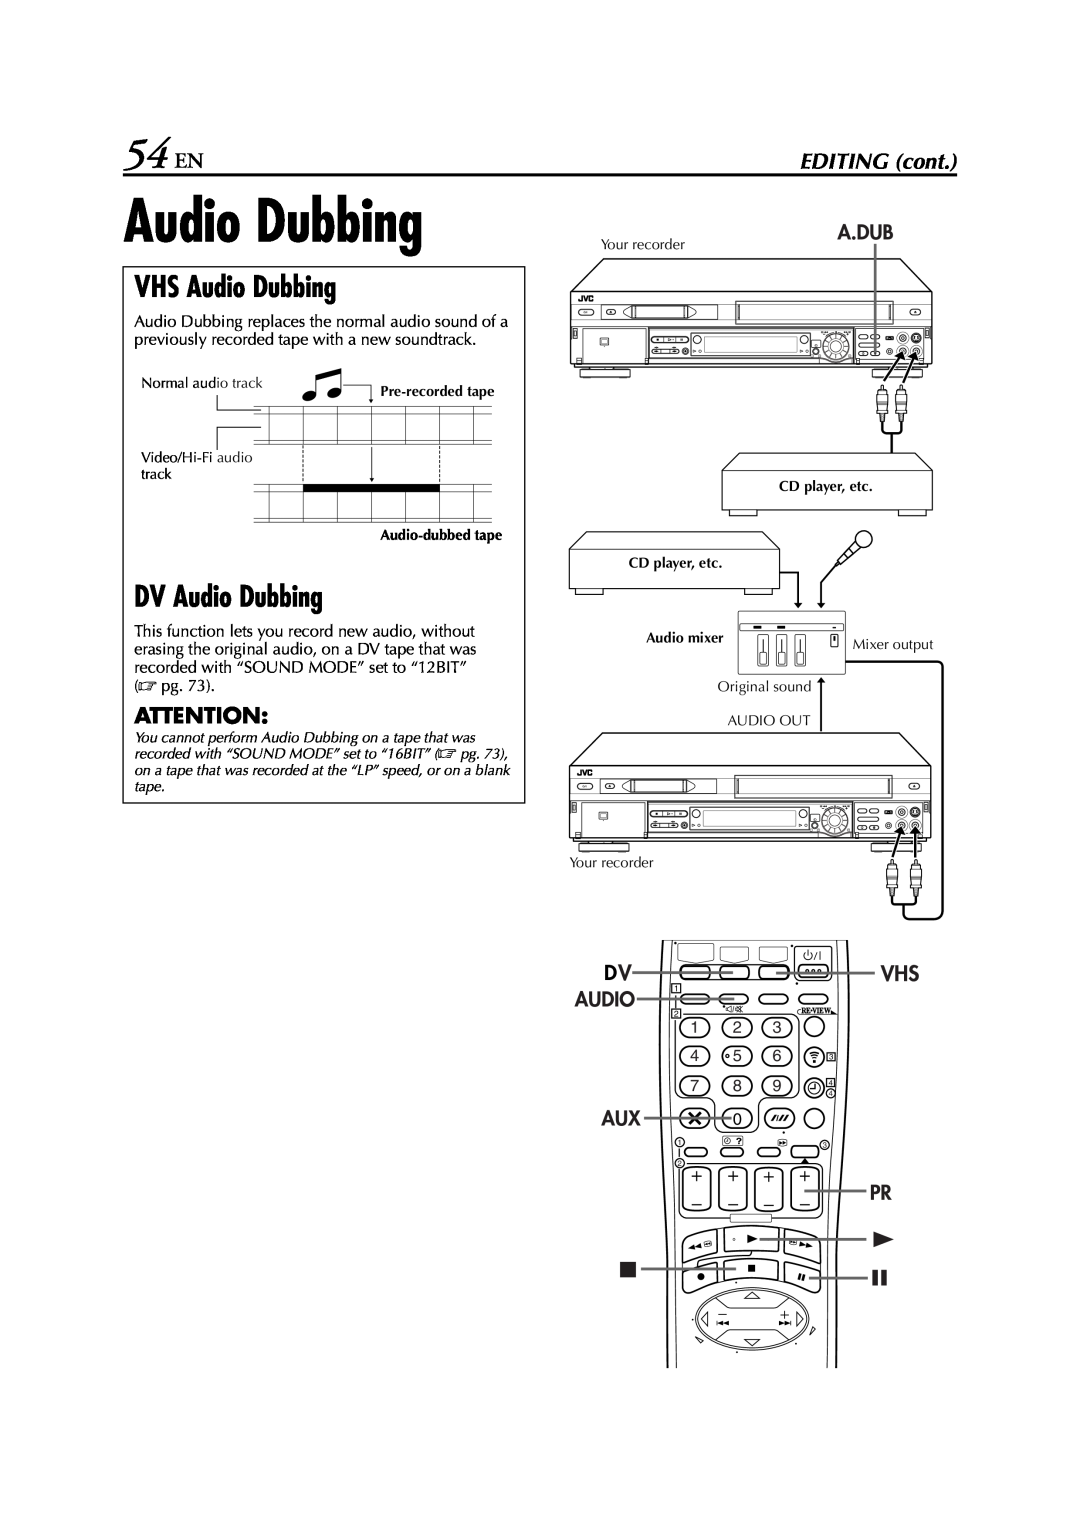 JVC LPT0616-001A specifications 54 EN, VHS Audio Dubbing, DV Audio Dubbing, EDITING cont 